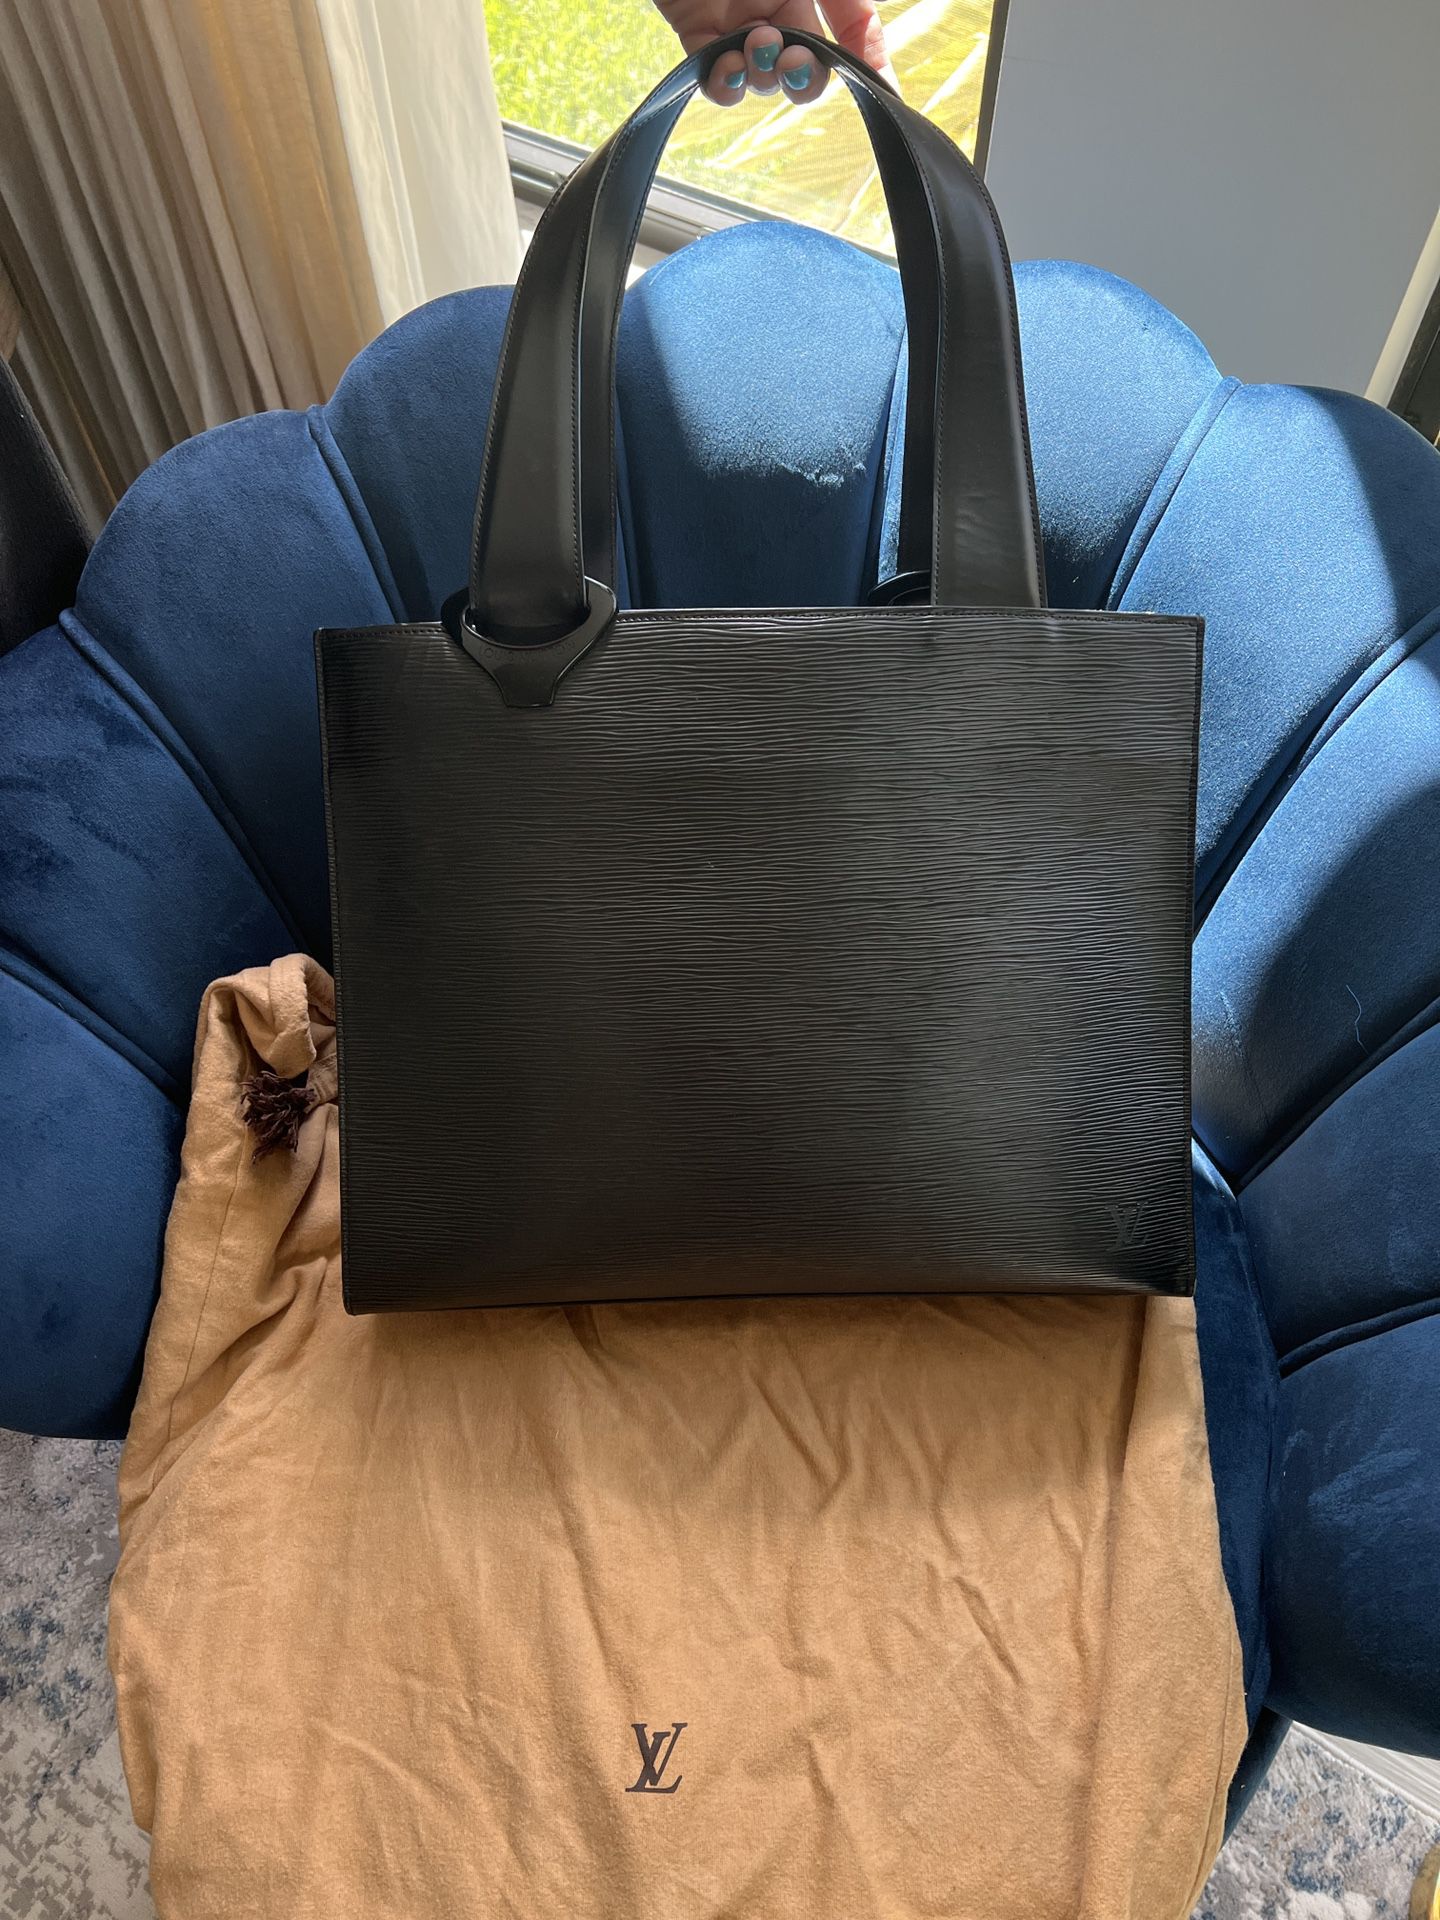 Authentic Louis Vuitton Epi Bag